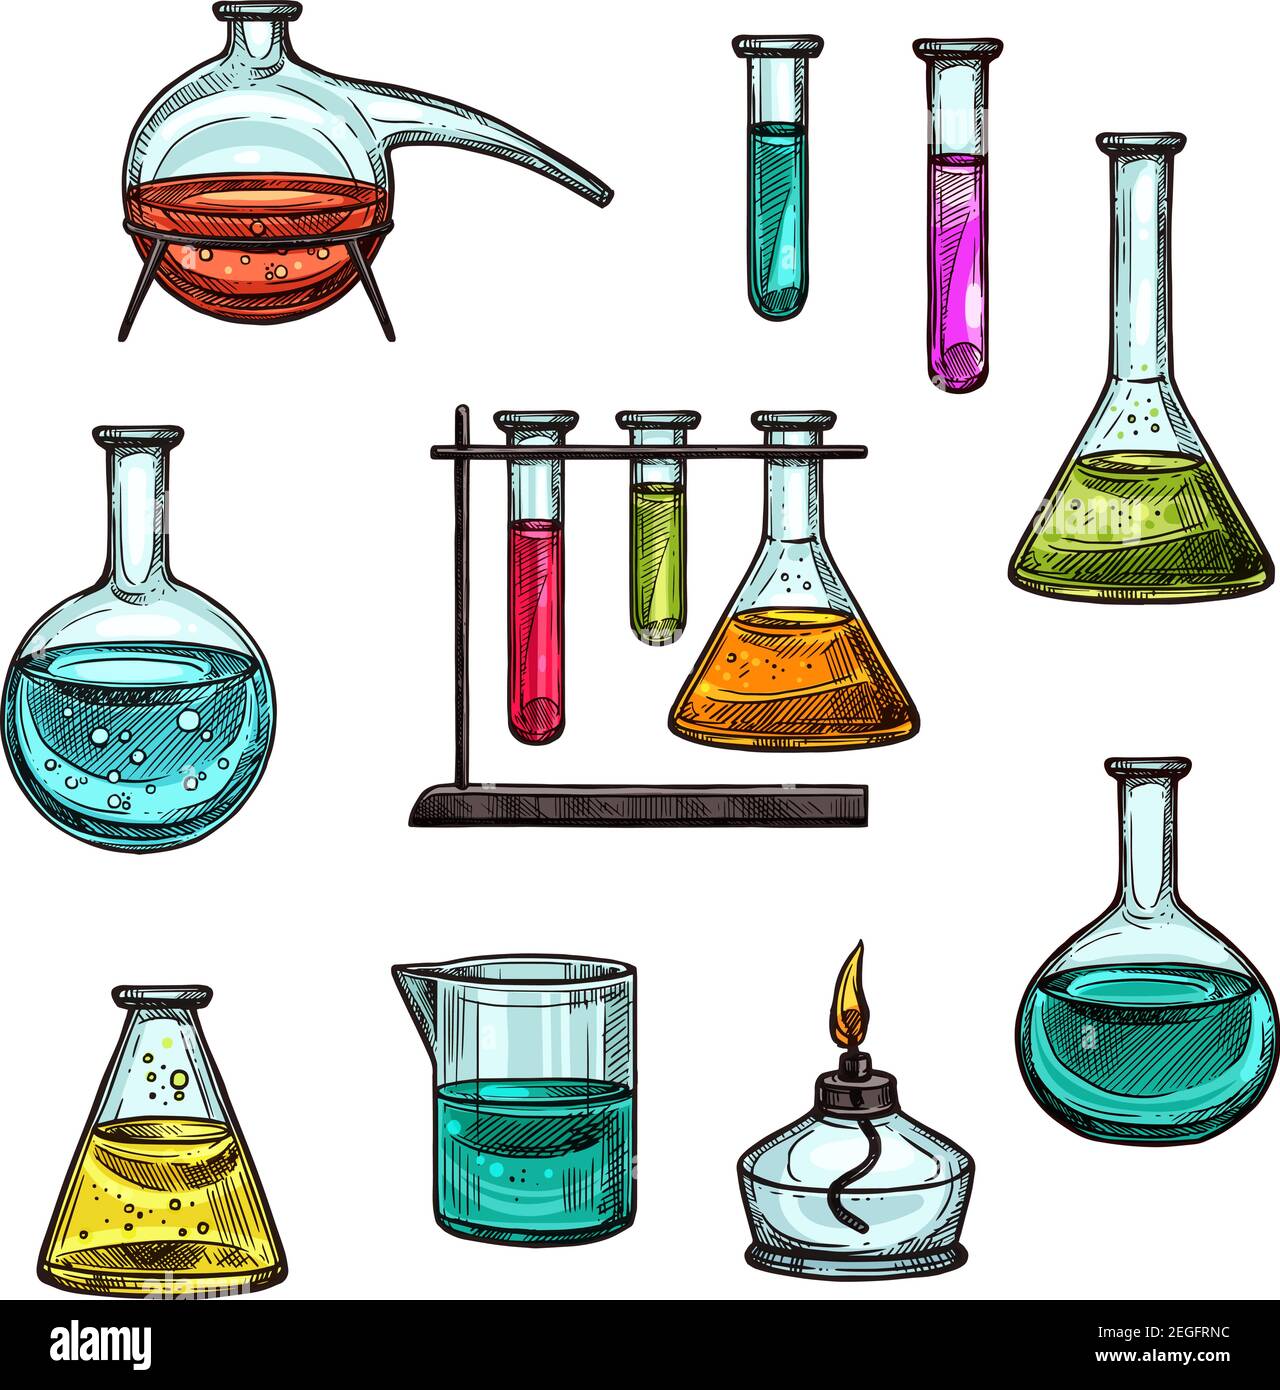 Los vasos de precipitados de química y los viales de pruebas químicas  trazan iconos para la tecnología científica y la investigación científica.  Vector aislado conjunto de tubos químicos para la química Imagen